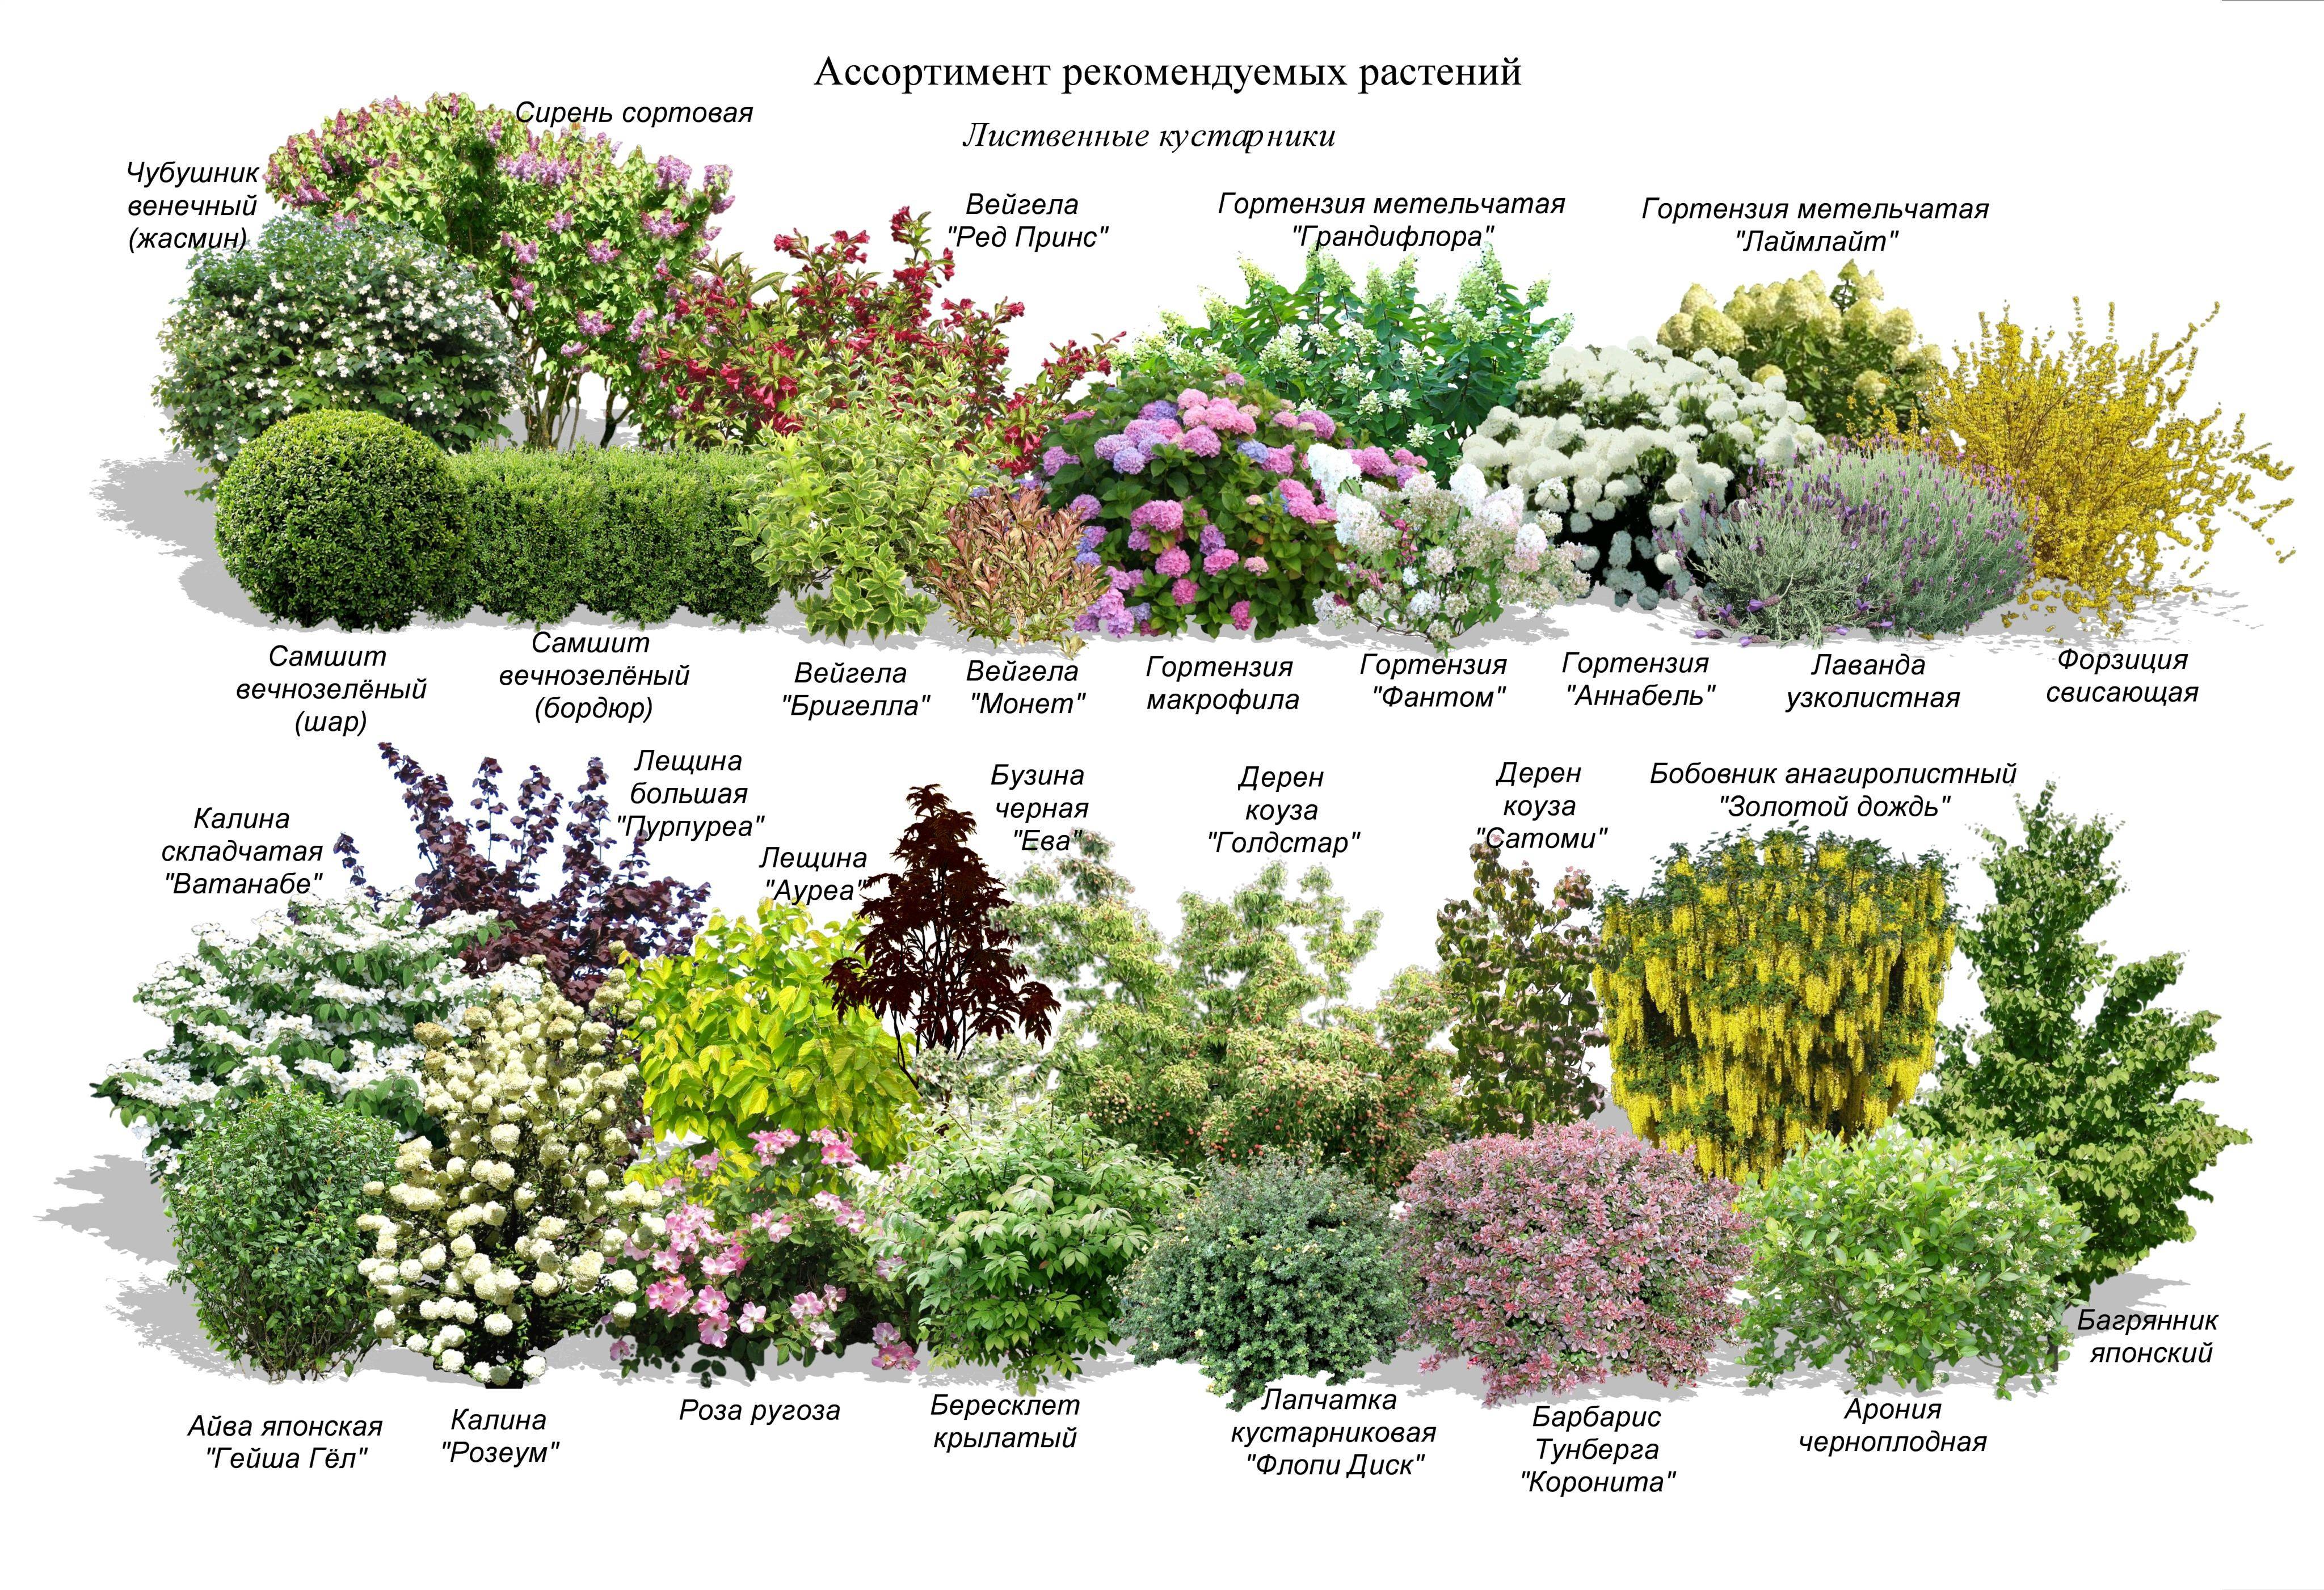 Правила сочетания цветов и растений при составлении ландшафтных композиций